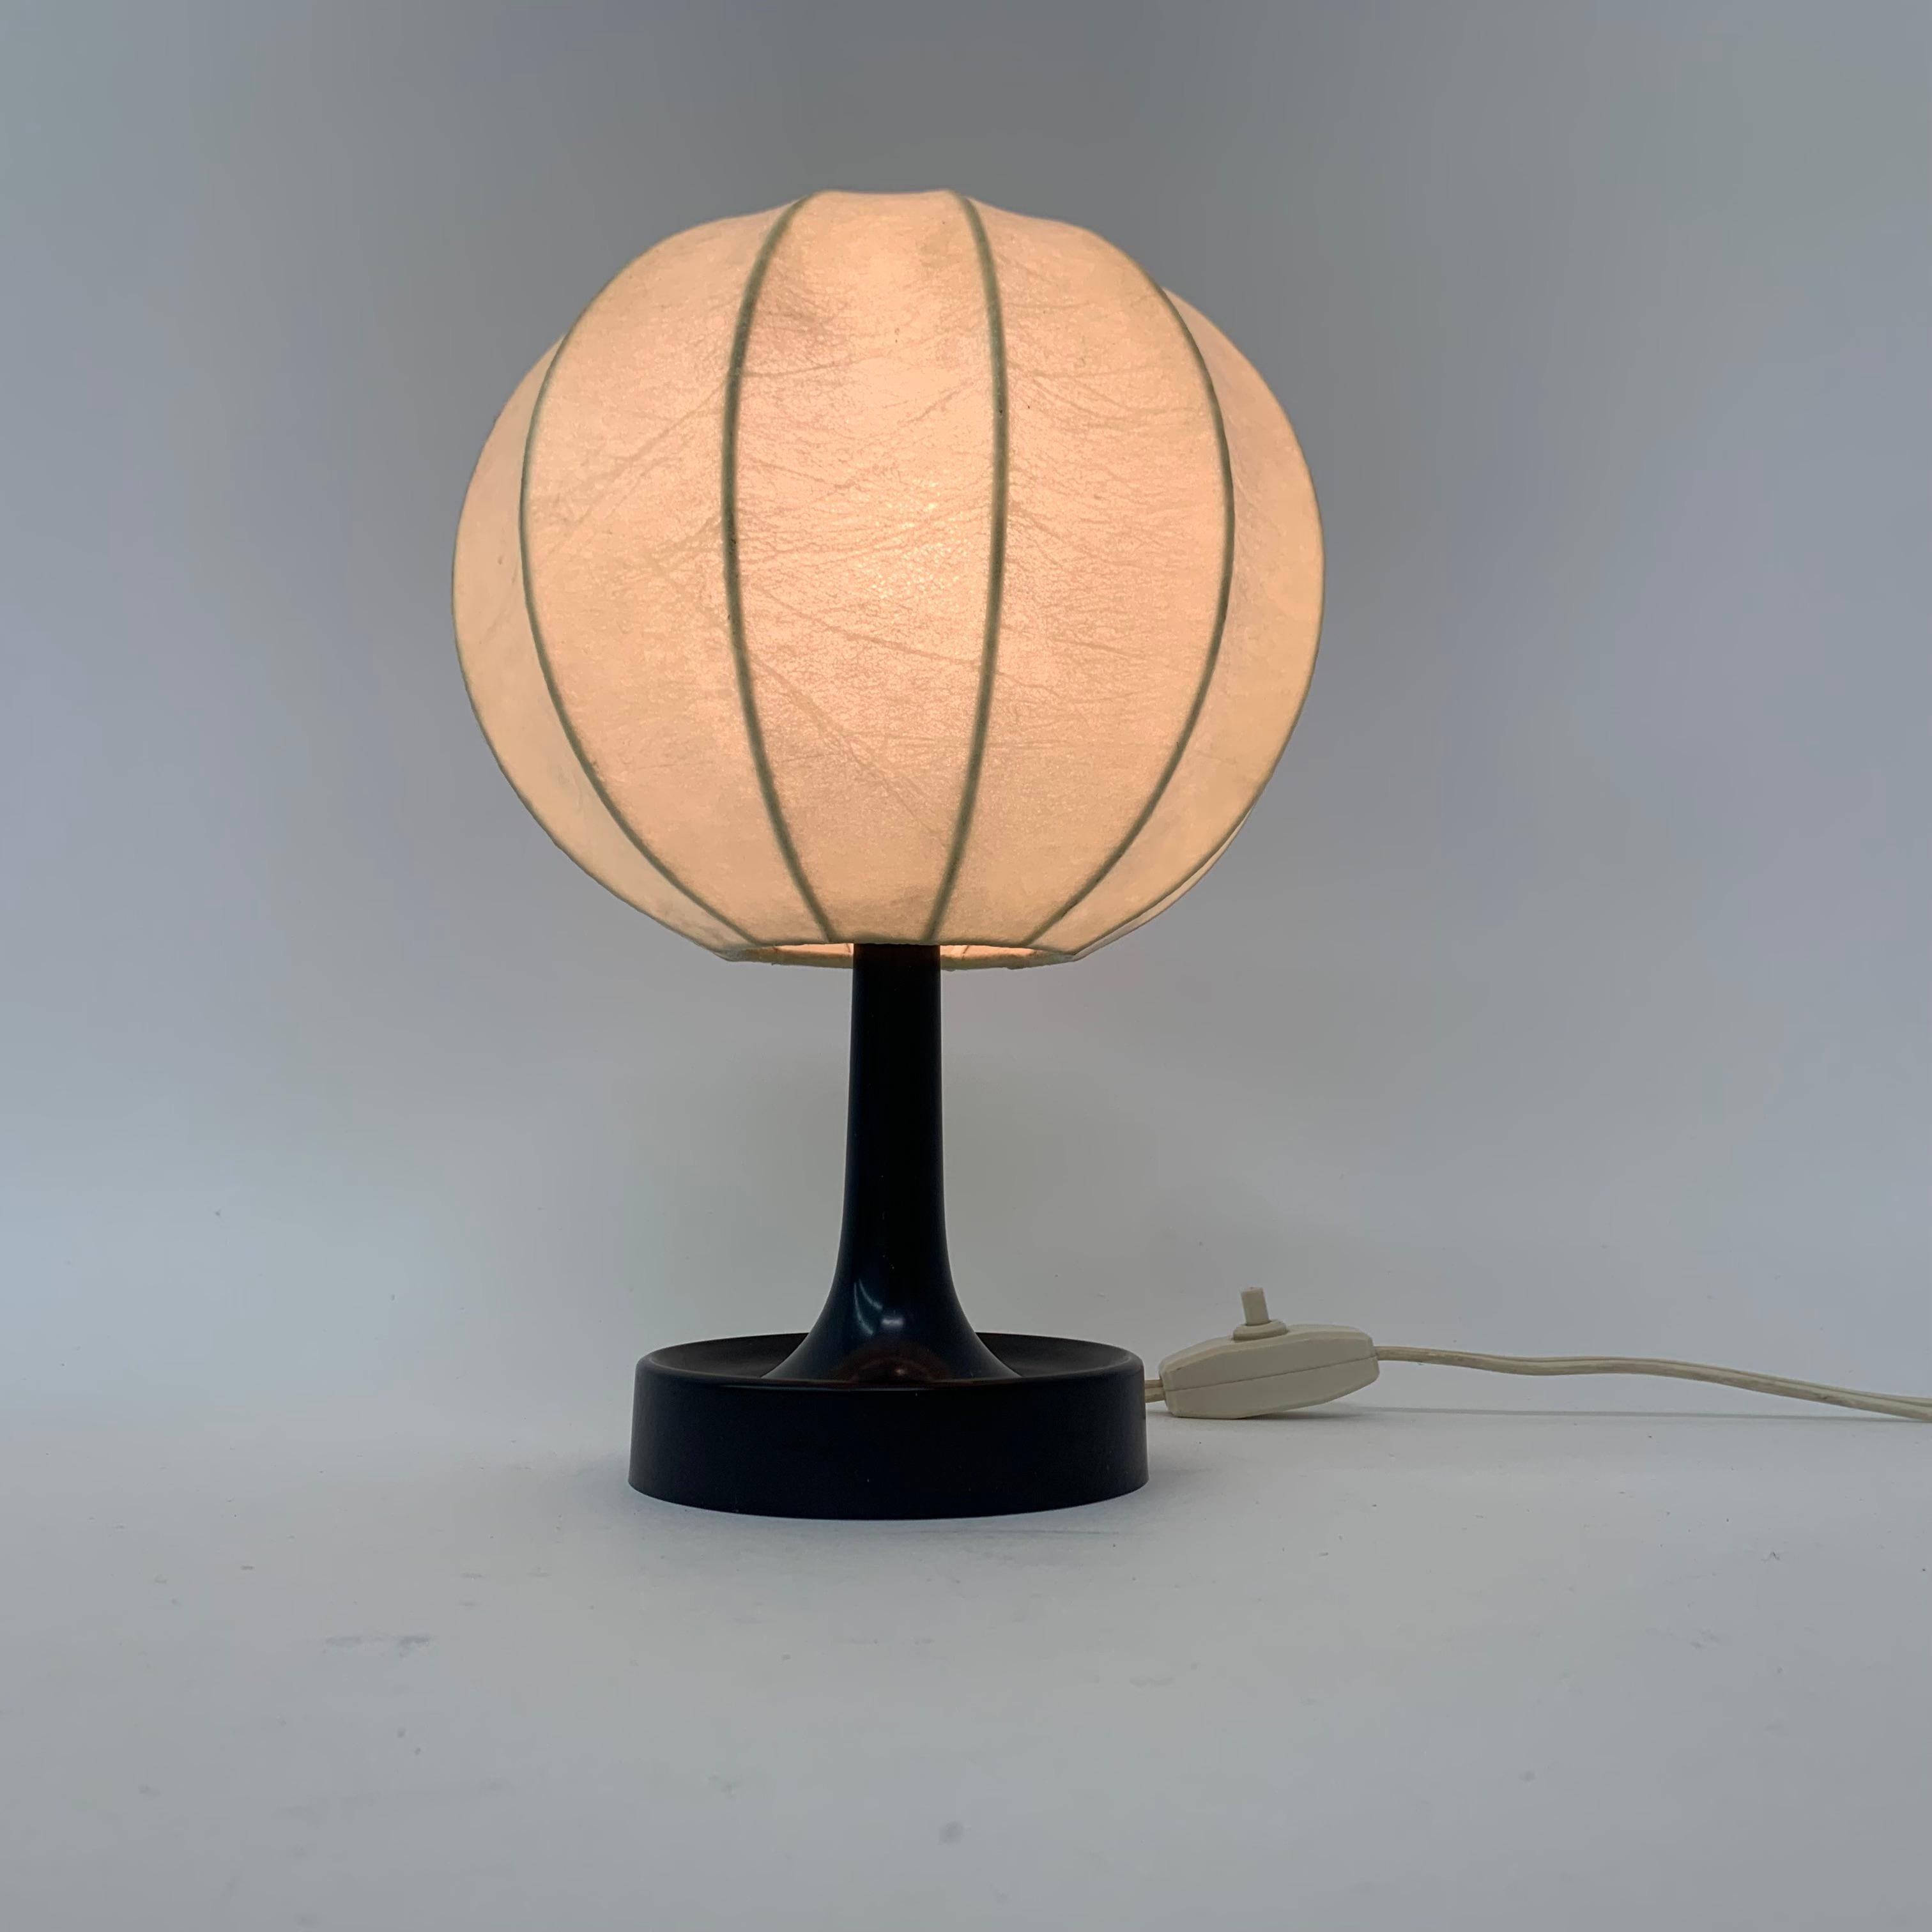 Cocoon-Tischlampe von Alfred Wauer für Goldkant, 1960er Jahre (Kunststoff)